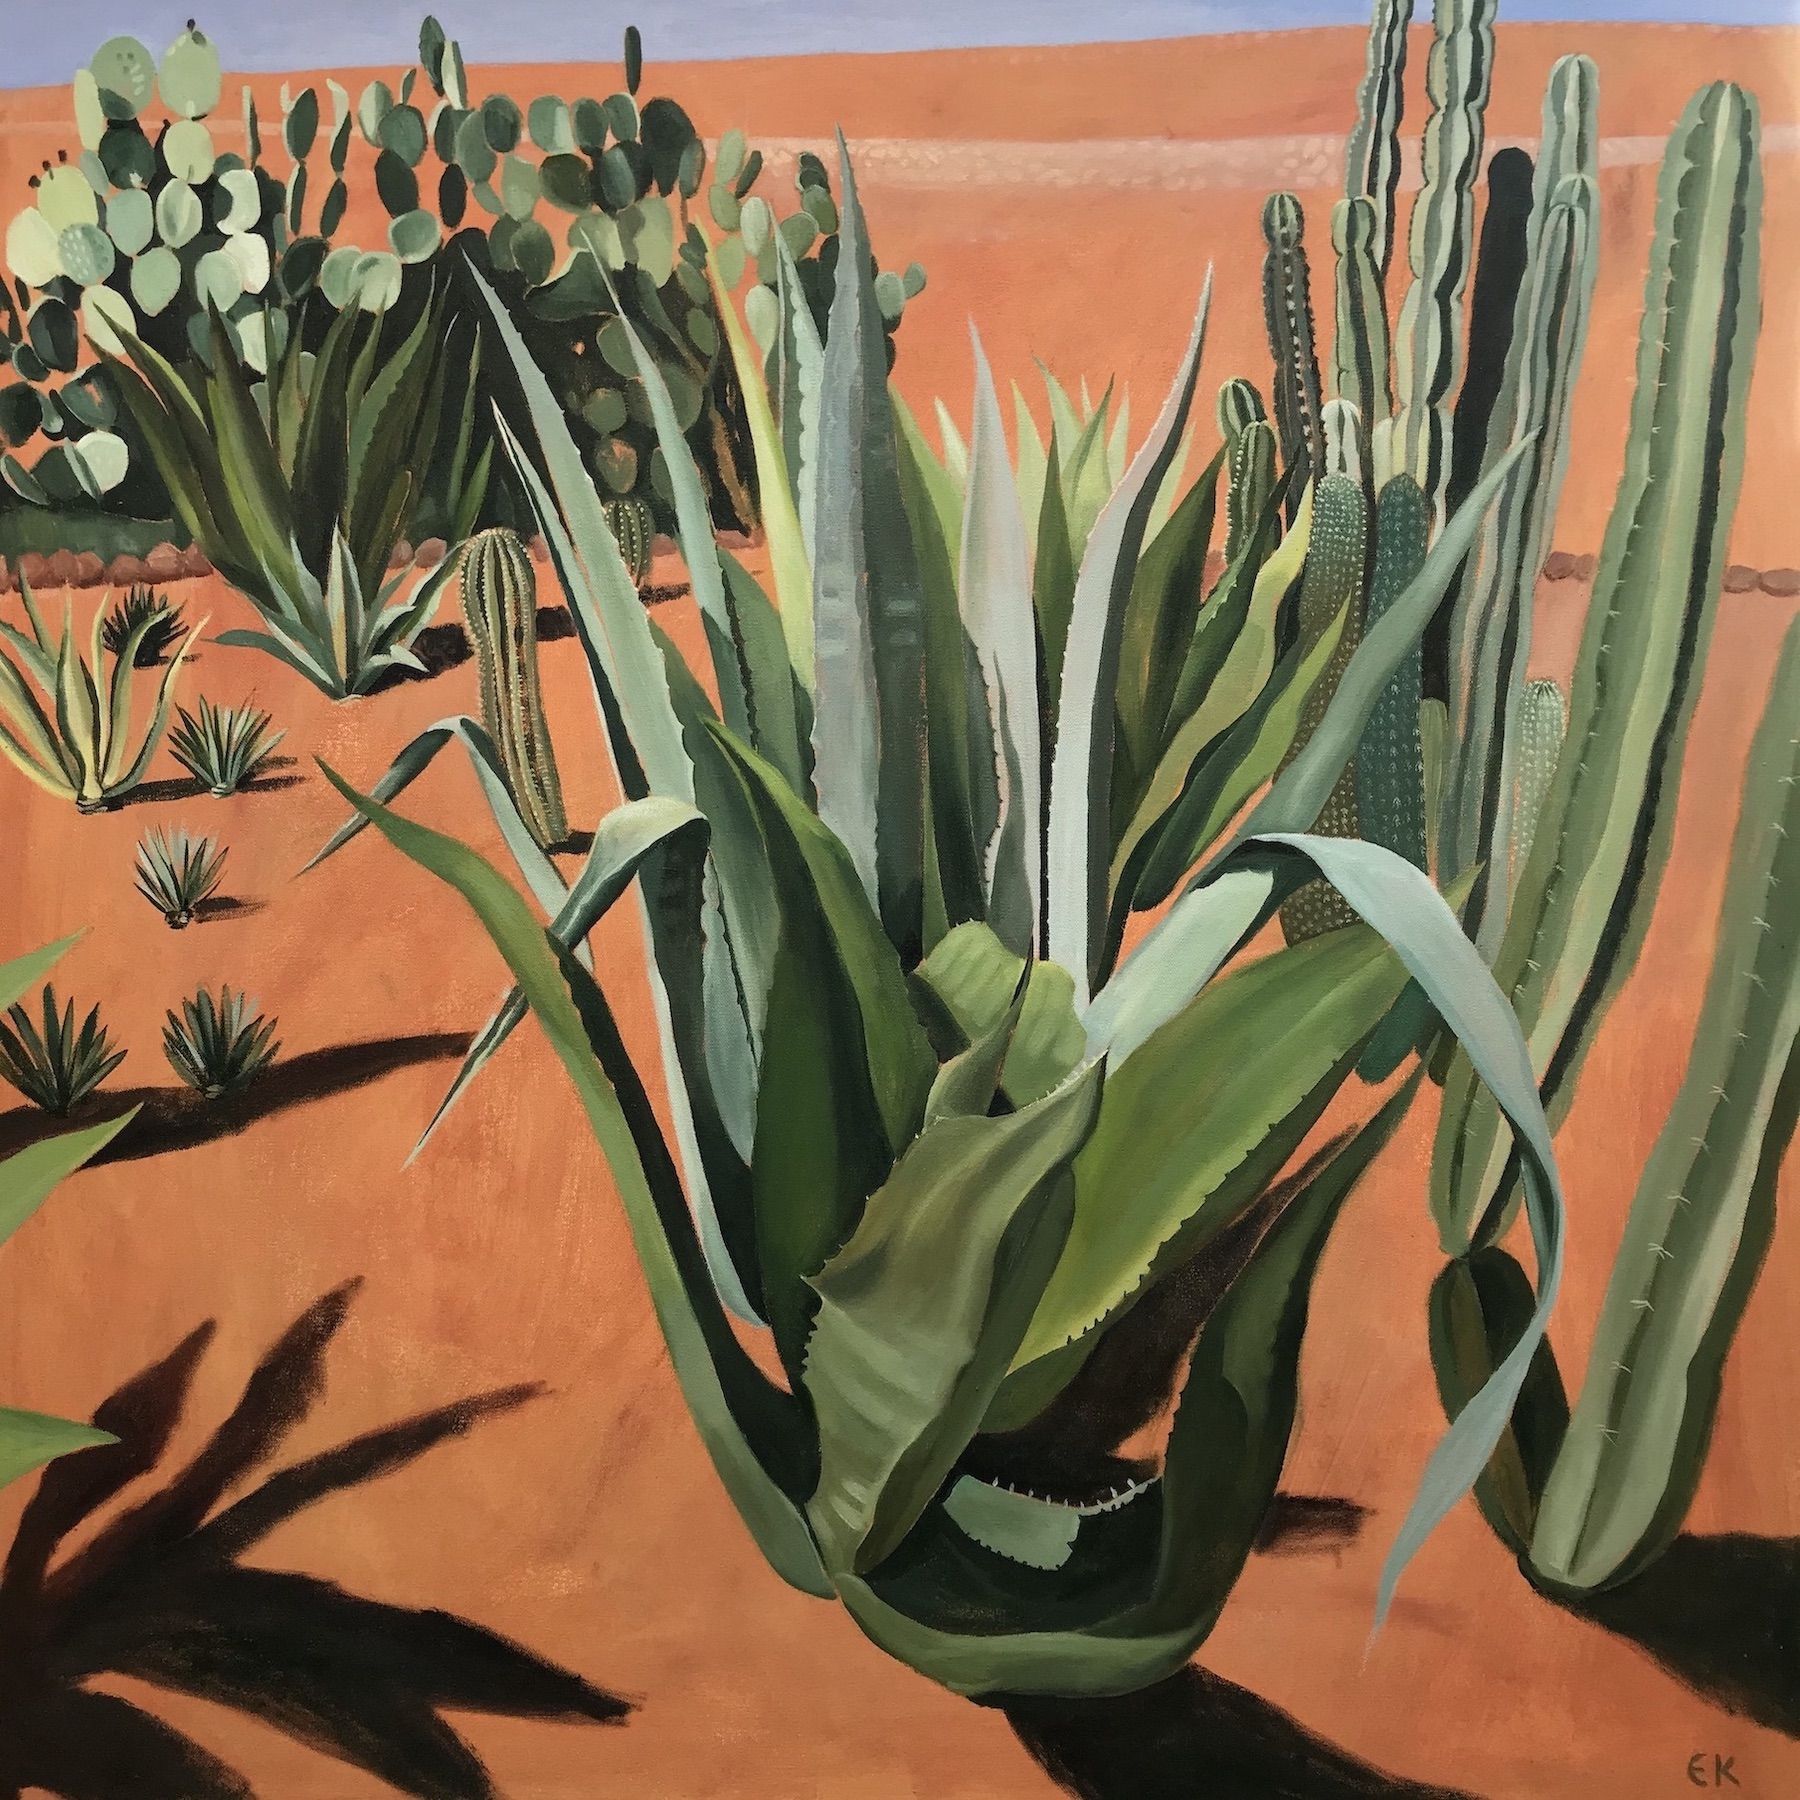 Cacti with Shadows by Elaine Kazimierczuk